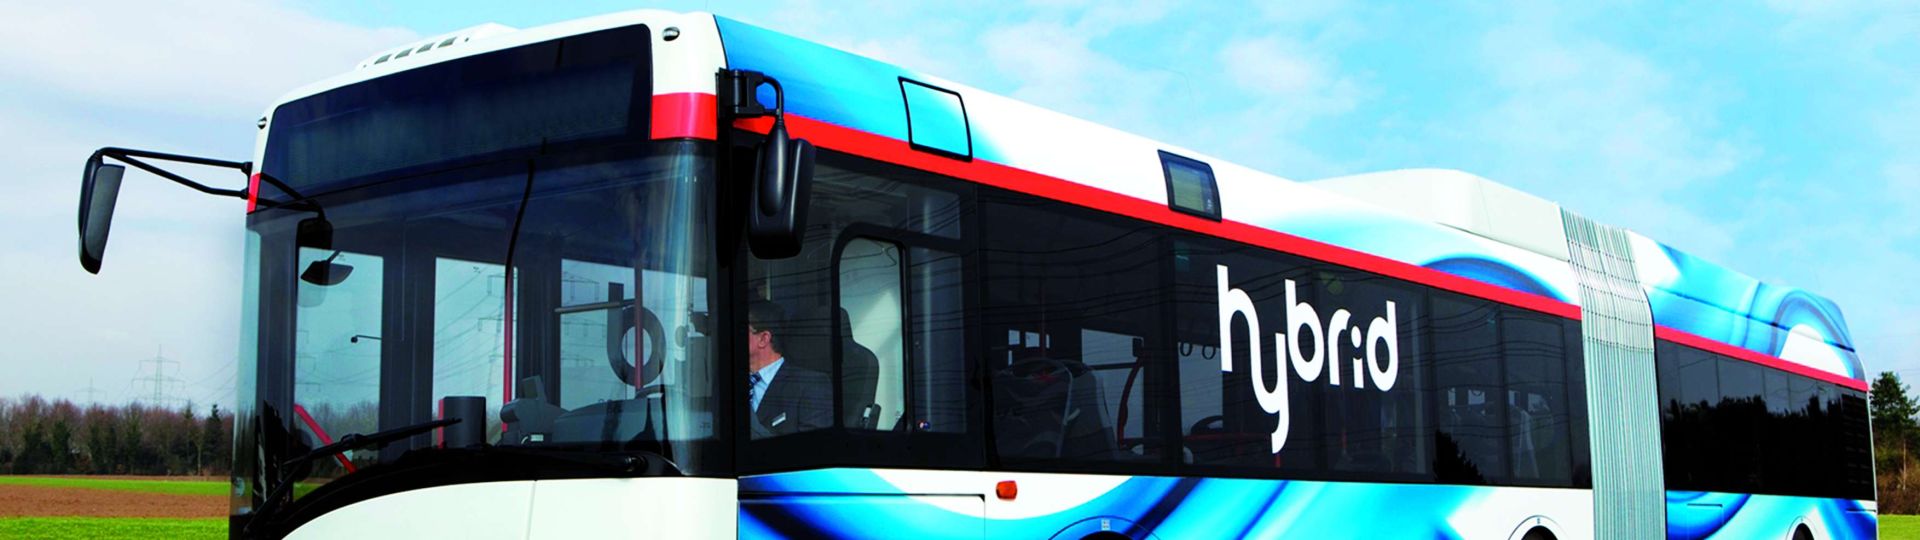 Seven Solaris Hybrid Buses for La Chaux-de-Fonds